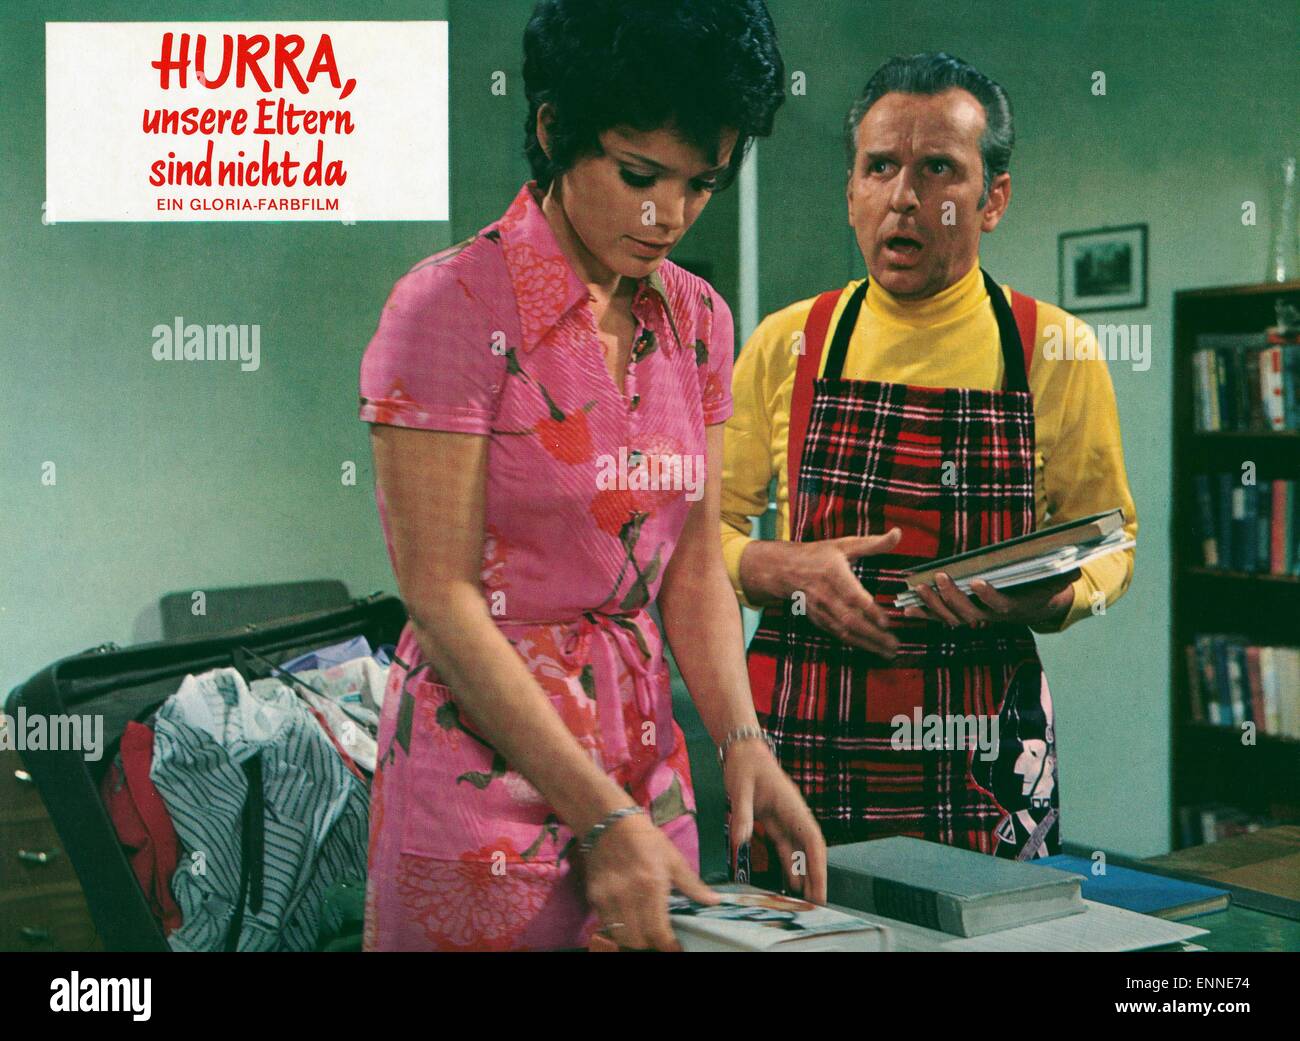 Hurra, unsere Eltern sind nicht da, Deutschland 1970, Regie: Wolfgang Schleif, Darsteller: Uschi Glas, Georg Thomalla Stock Photo